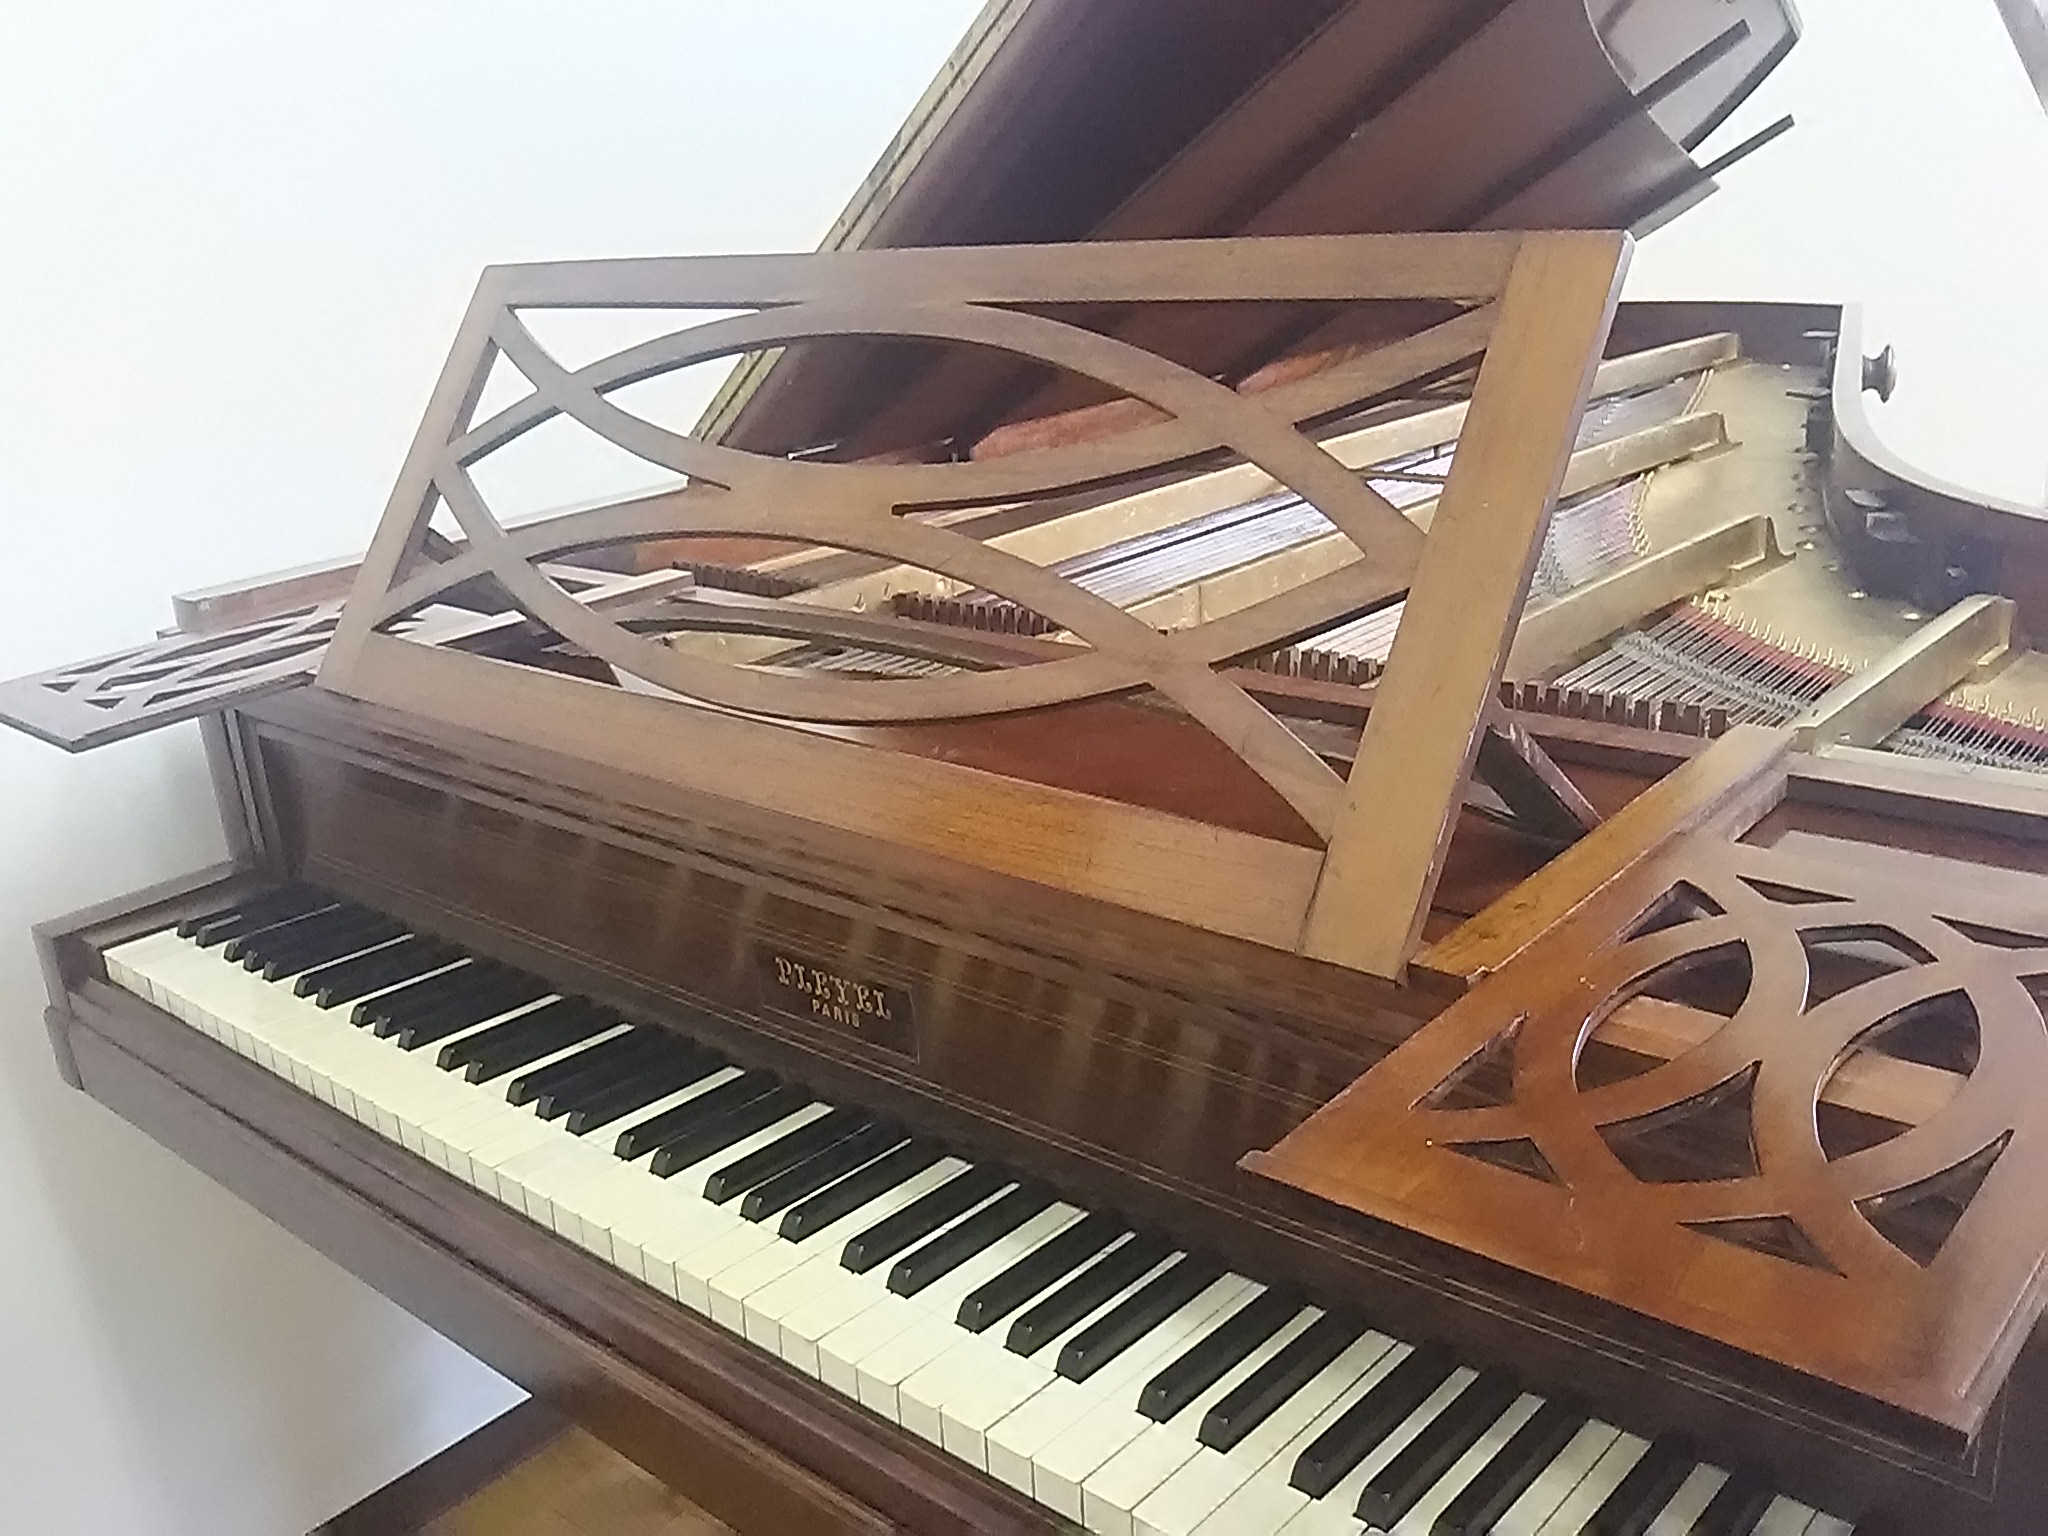 カミーユ プレイエル1848年製作フォルテピアノ スタジオと所有楽器 チェンバロ奏者八百板正己の公式サイト